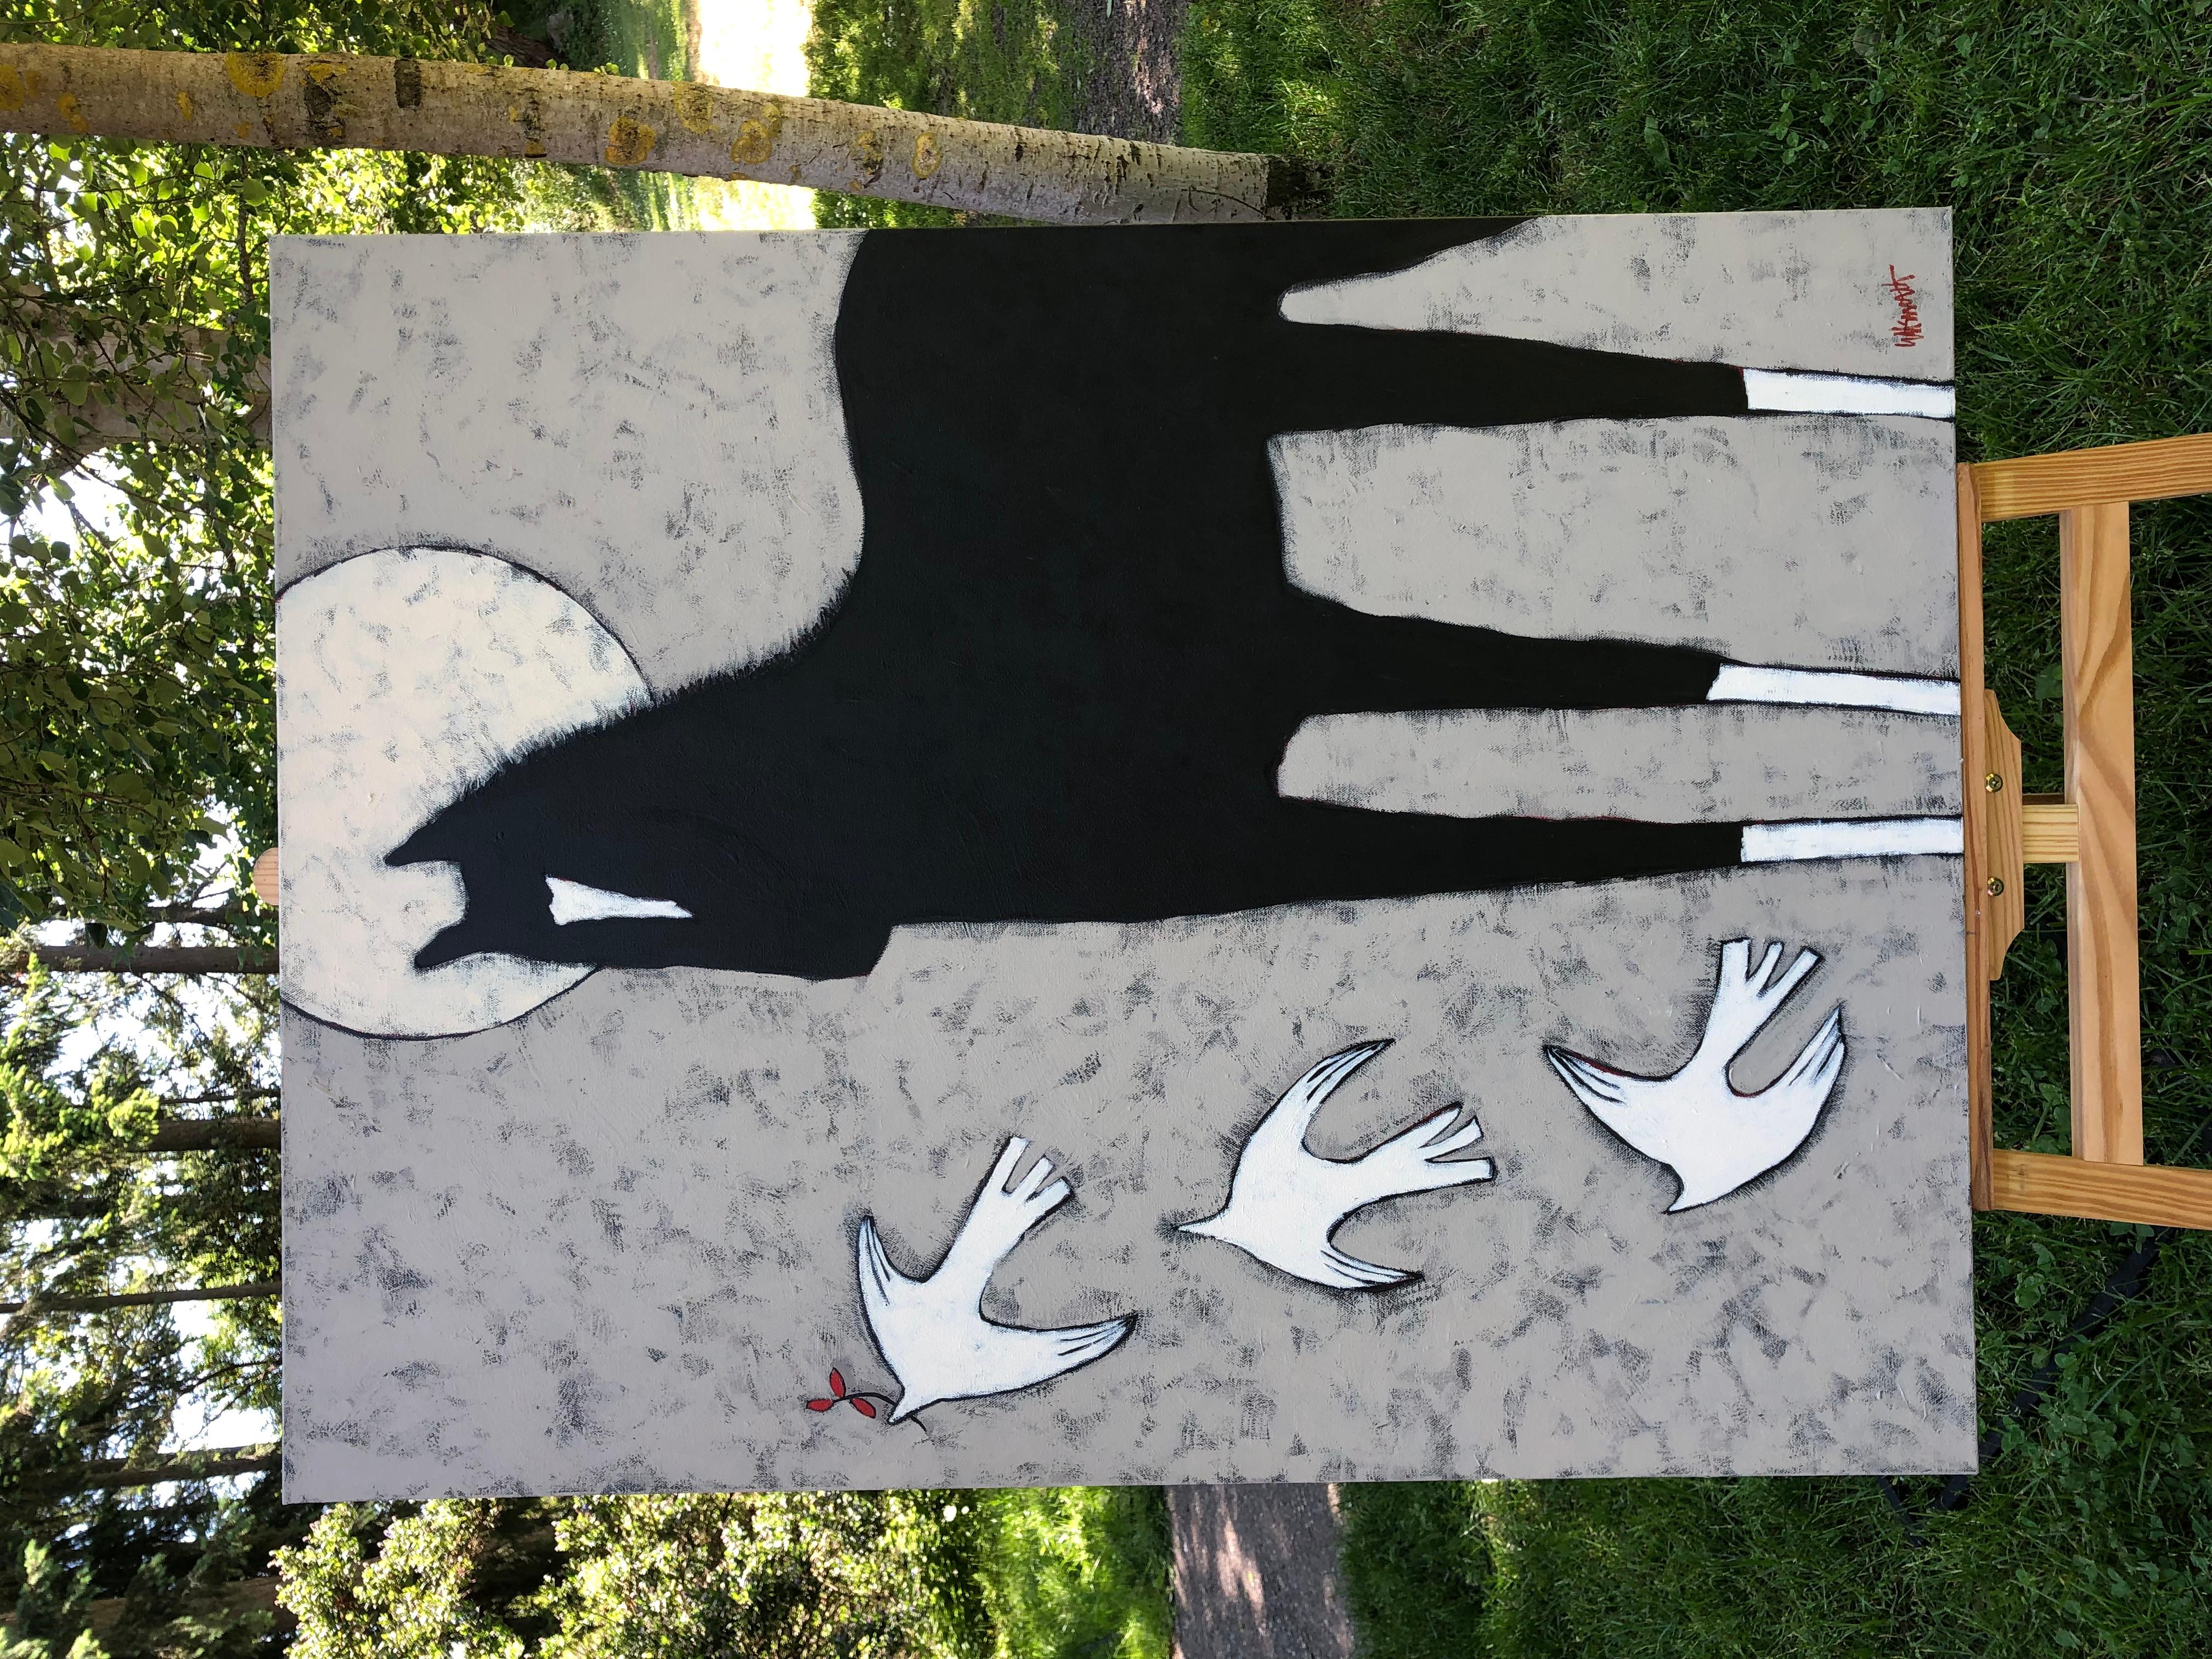 <p>Kommentare der Künstlerin<br>Die Künstlerin Jaime Ellsworth präsentiert ein schwarzes Pferd, in dessen Nähe drei weiße Tauben fliegen. Ein blasser Vollmond steigt von oben auf und beleuchtet die Tiere. Farbschichten verleihen Tiefe und Reichtum,